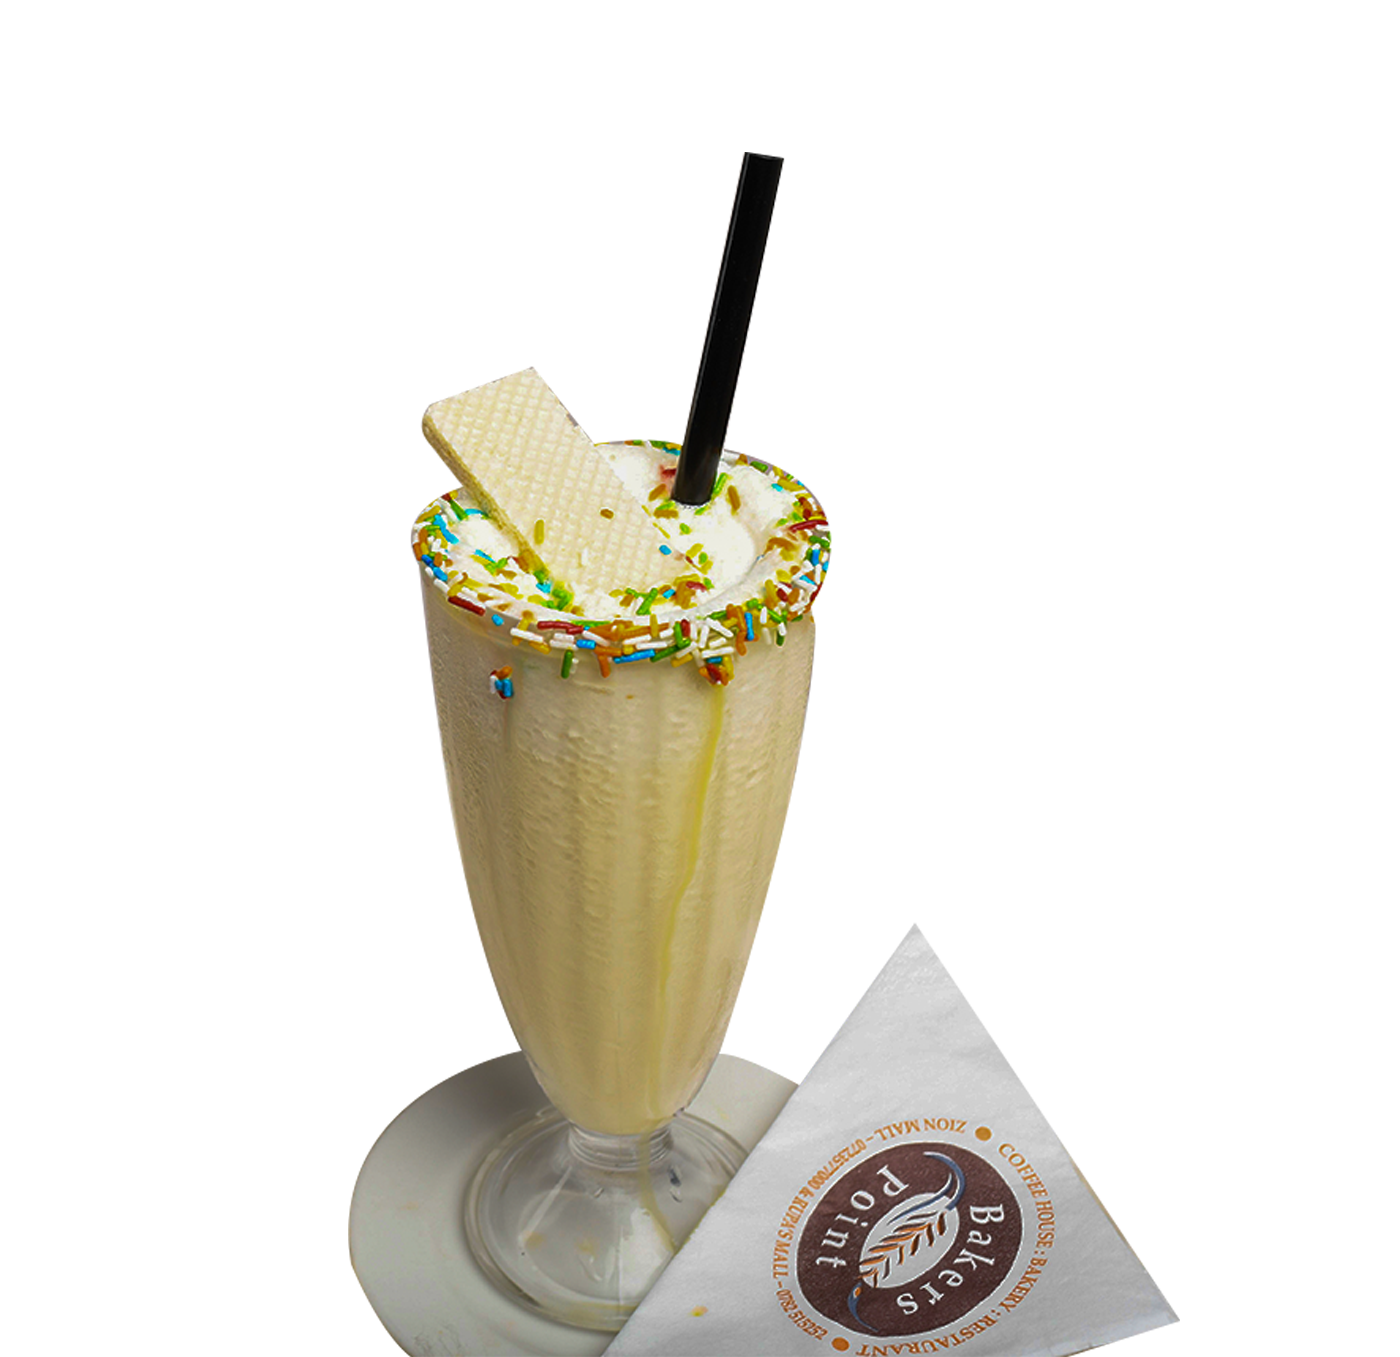 Vanilla Milkshake – Bakers Point